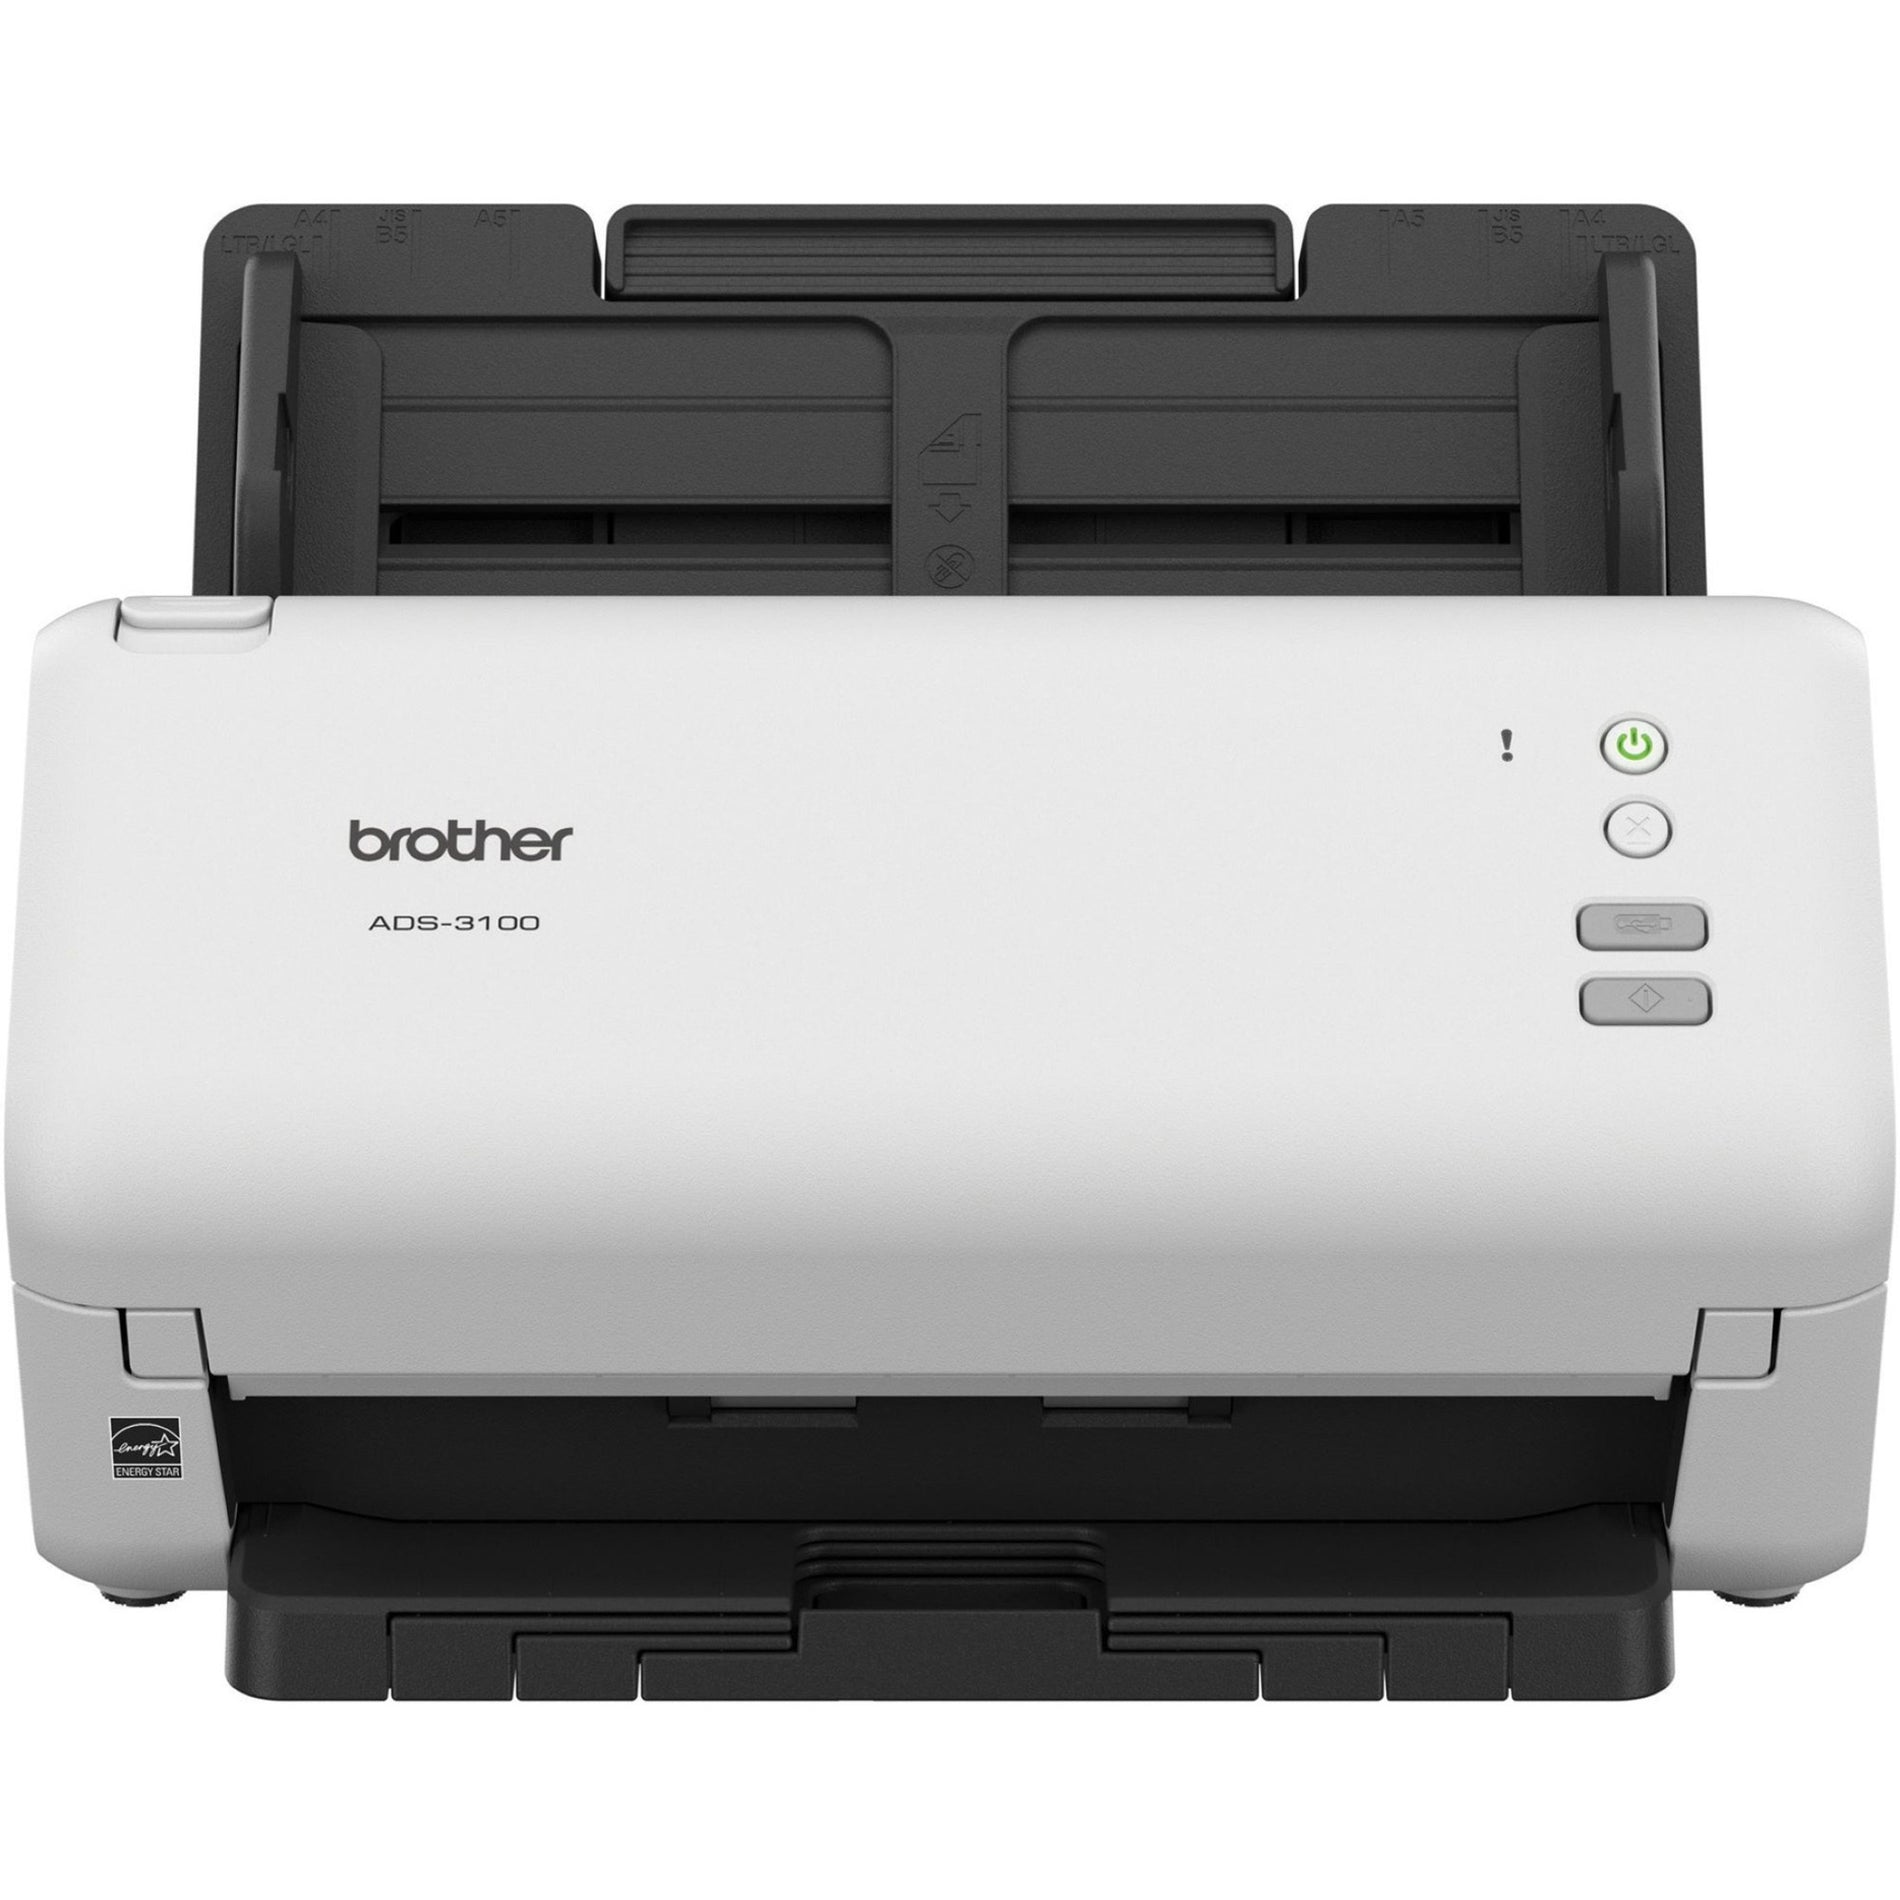 Brother ADS3100 High-Speed Desktop Scanner - Scan Color, Duplex Scanning, 600 x 600 dpi Optical, 80 ipm, 40 ppm